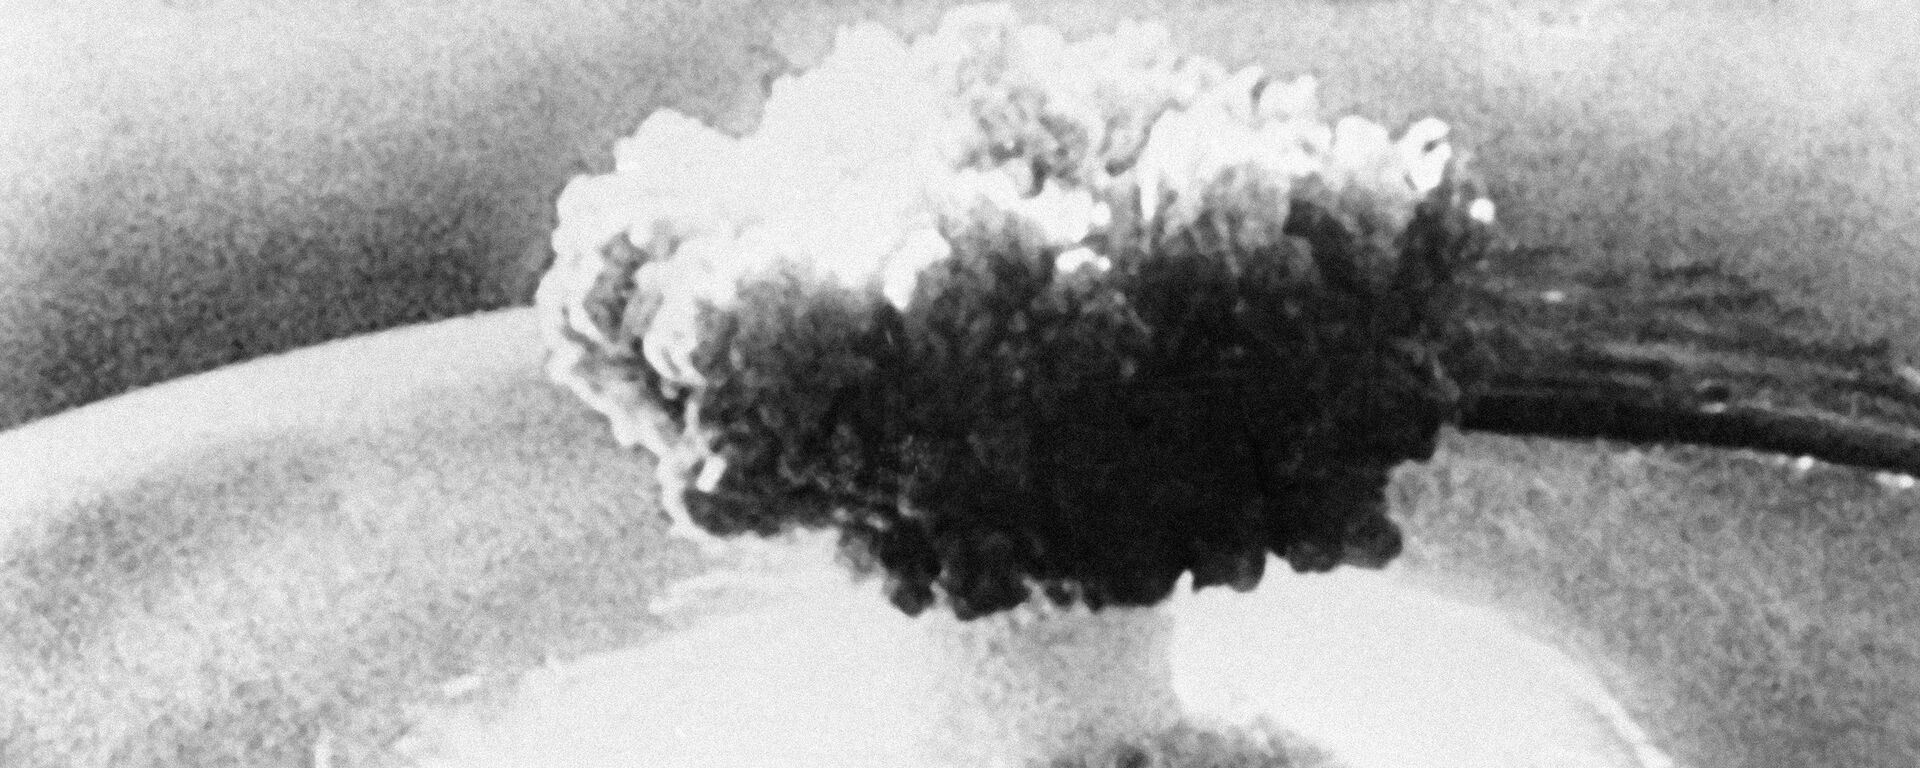 انفجار نووي - سبوتنيك عربي, 1920, 25.03.2021